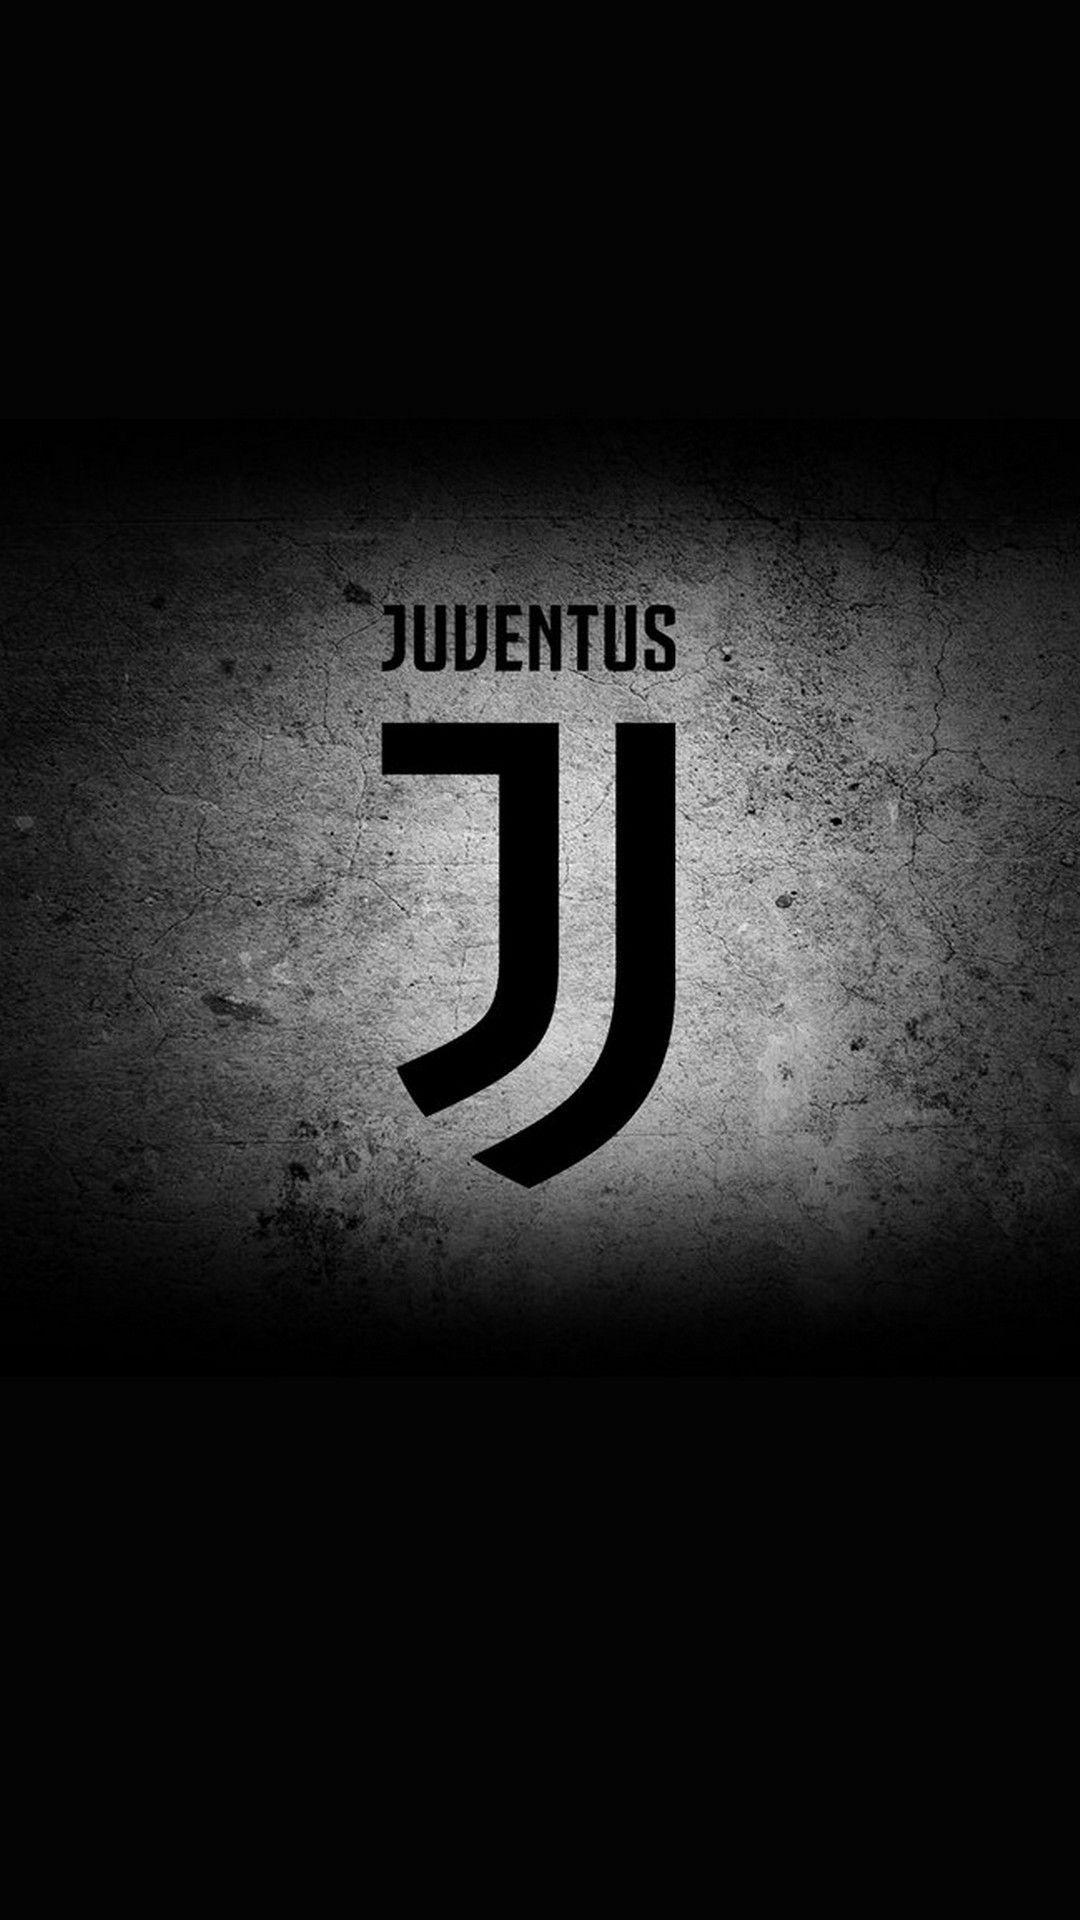 Juventus Wallpaper Free Juventus Background